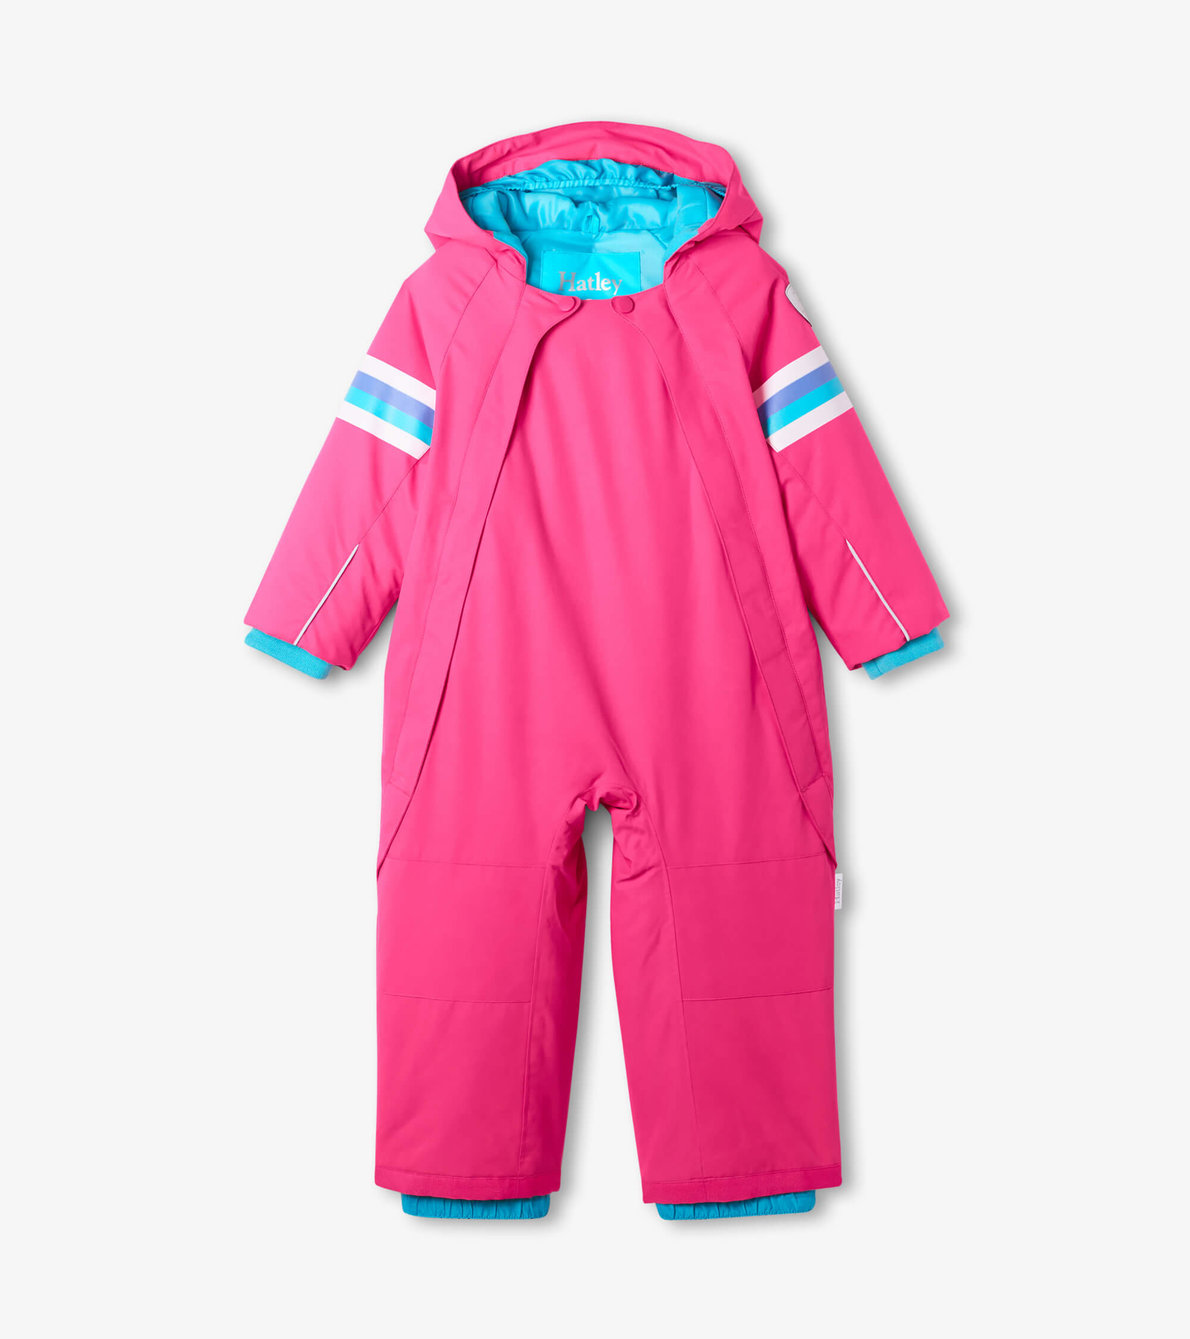 View larger image of Pink Toddler Snowsuit